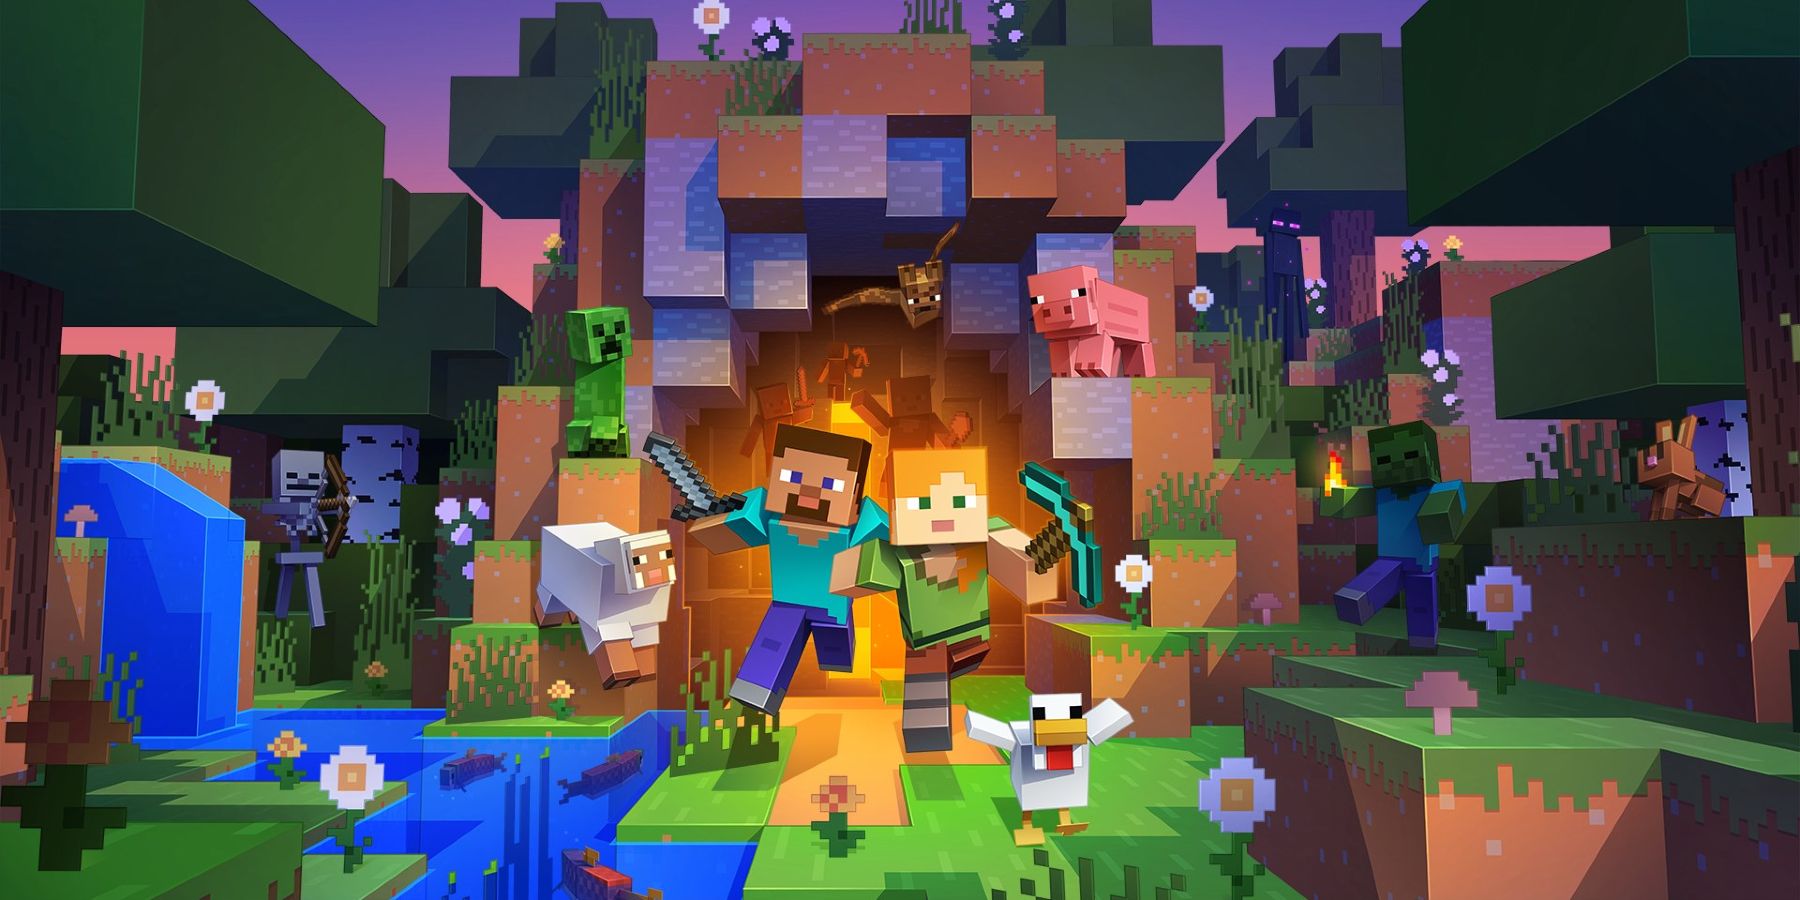 Изображение из Minecraft, показывающее несколько персонажей, выходящих из открытой пещеры.